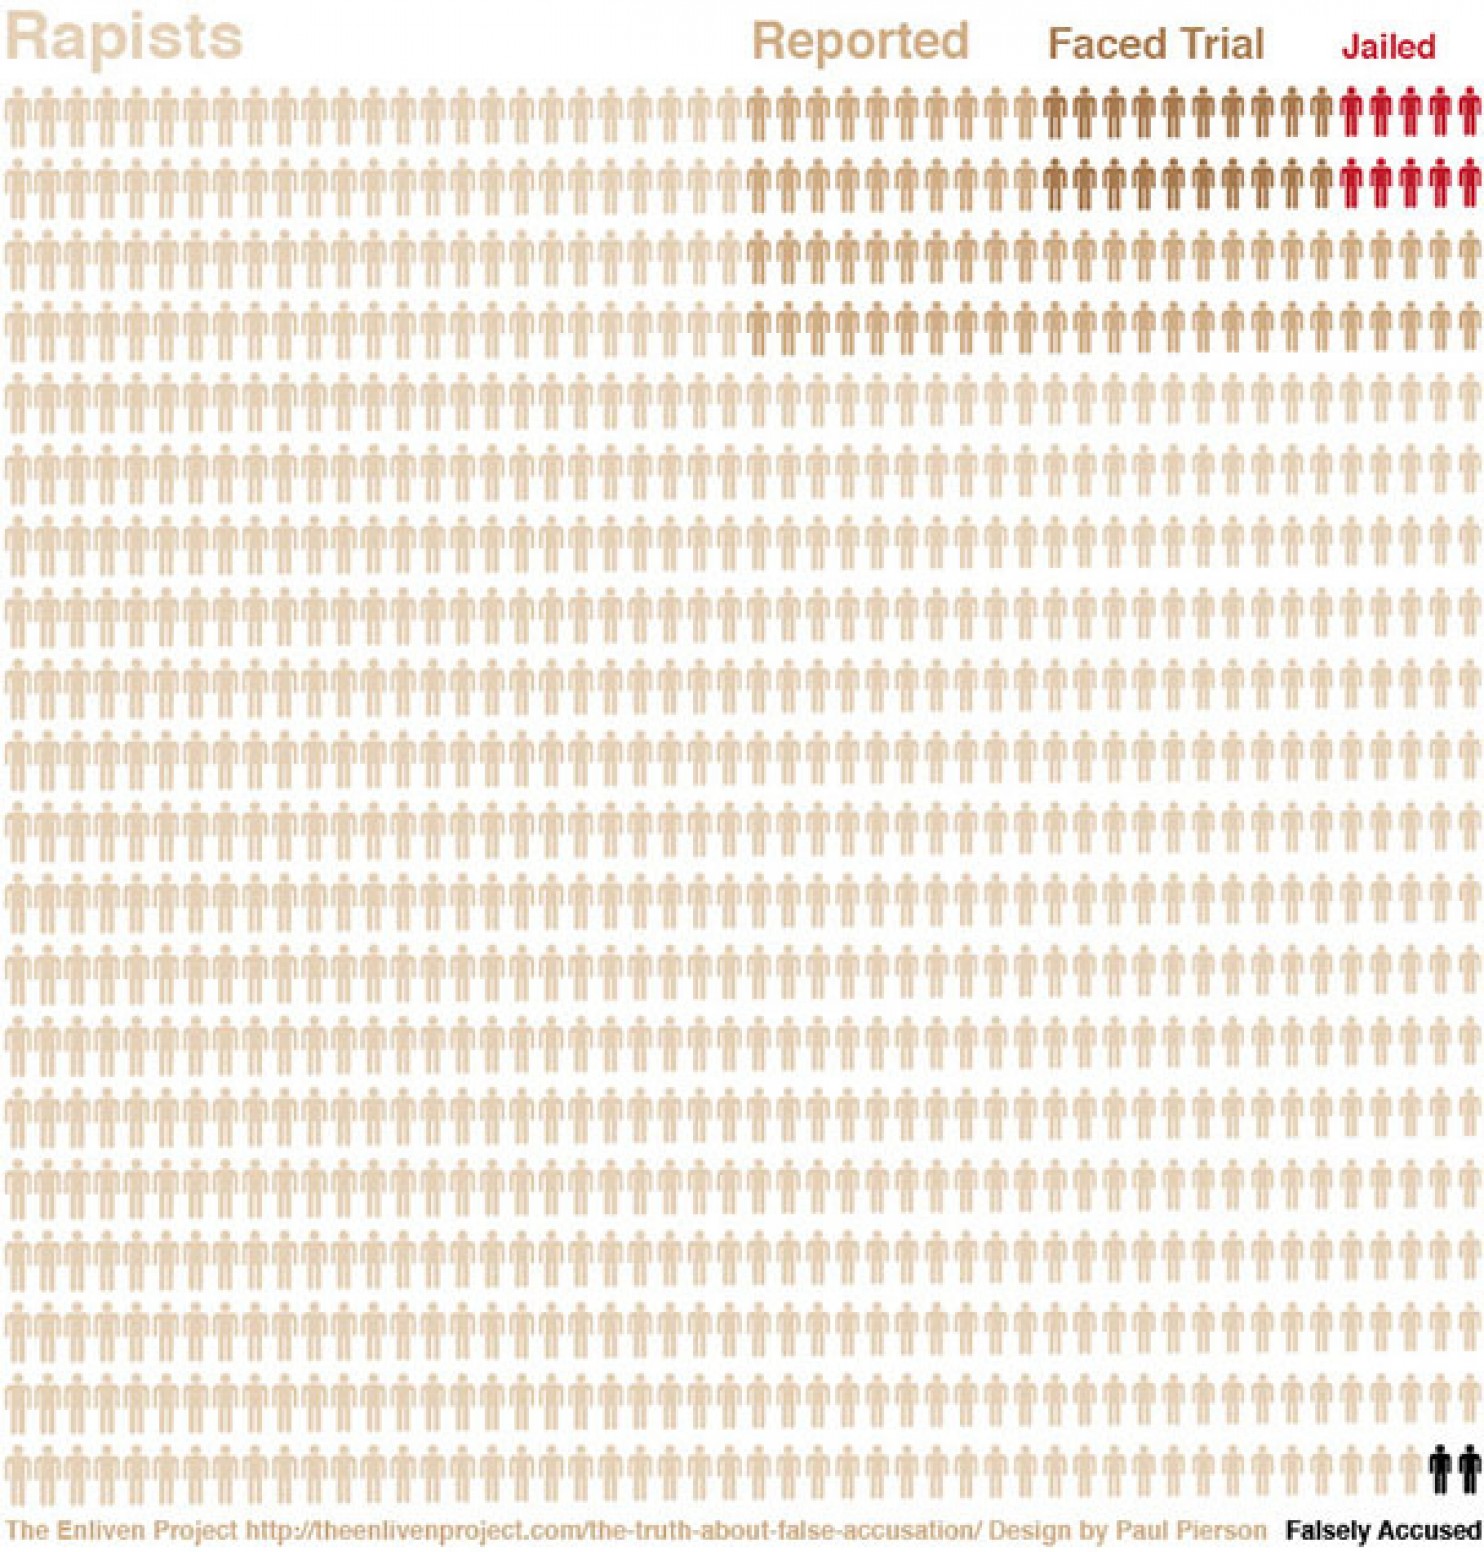 rape stats